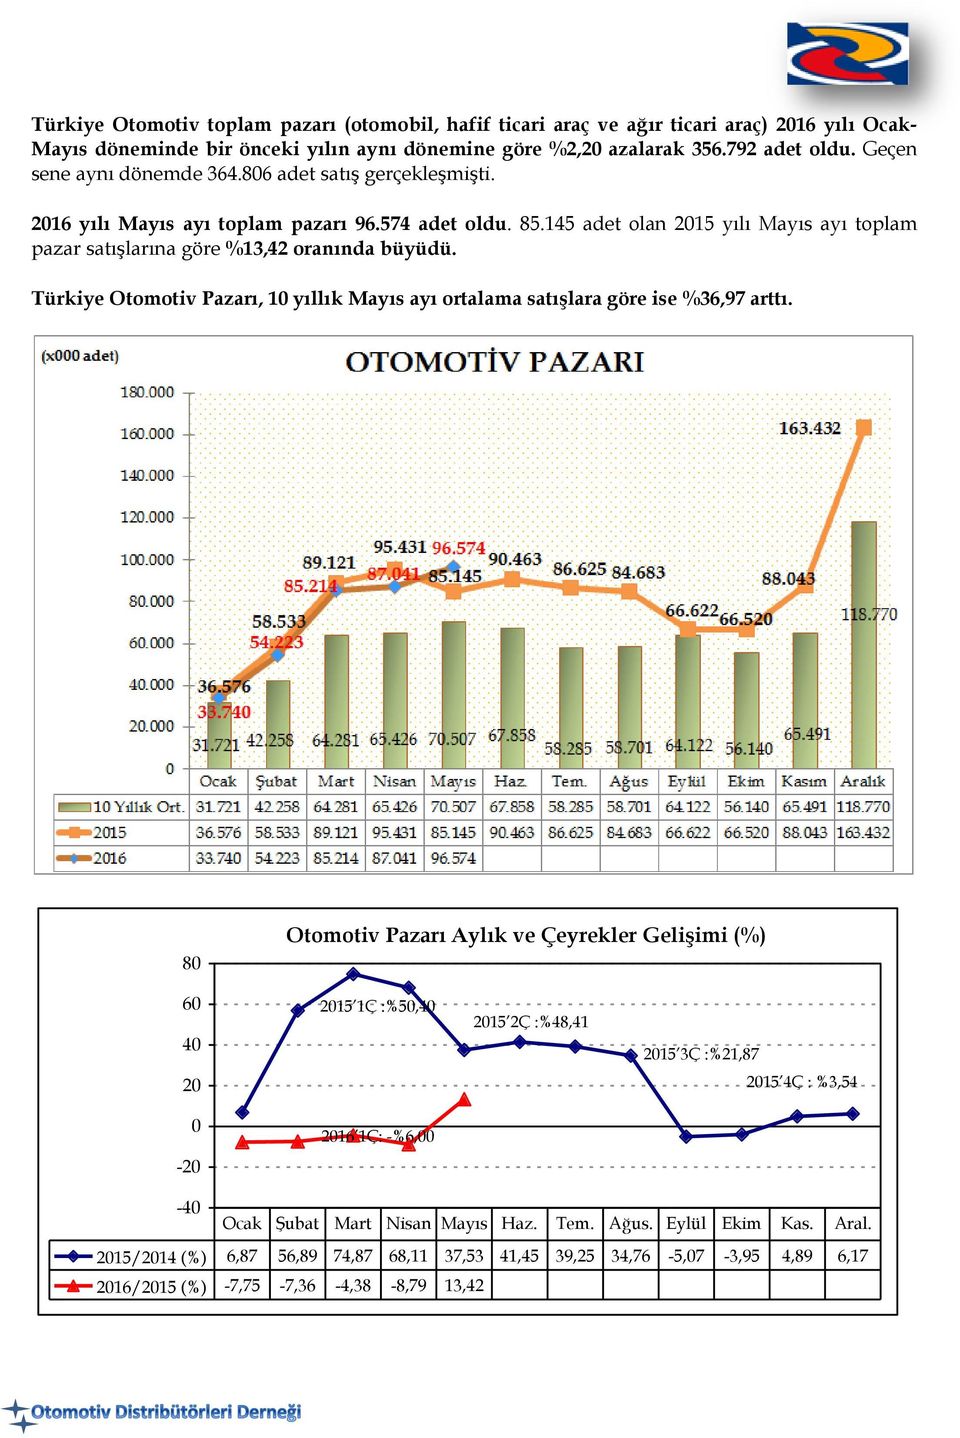 145 adet olan 2015 yılı Mayıs ayı toplam pazar satışlarına göre %13,42 oranında büyüdü. Türkiye Otomotiv Pazarı, 10 yıllık Mayıs ayı ortalama satışlara göre ise %36,97 arttı.